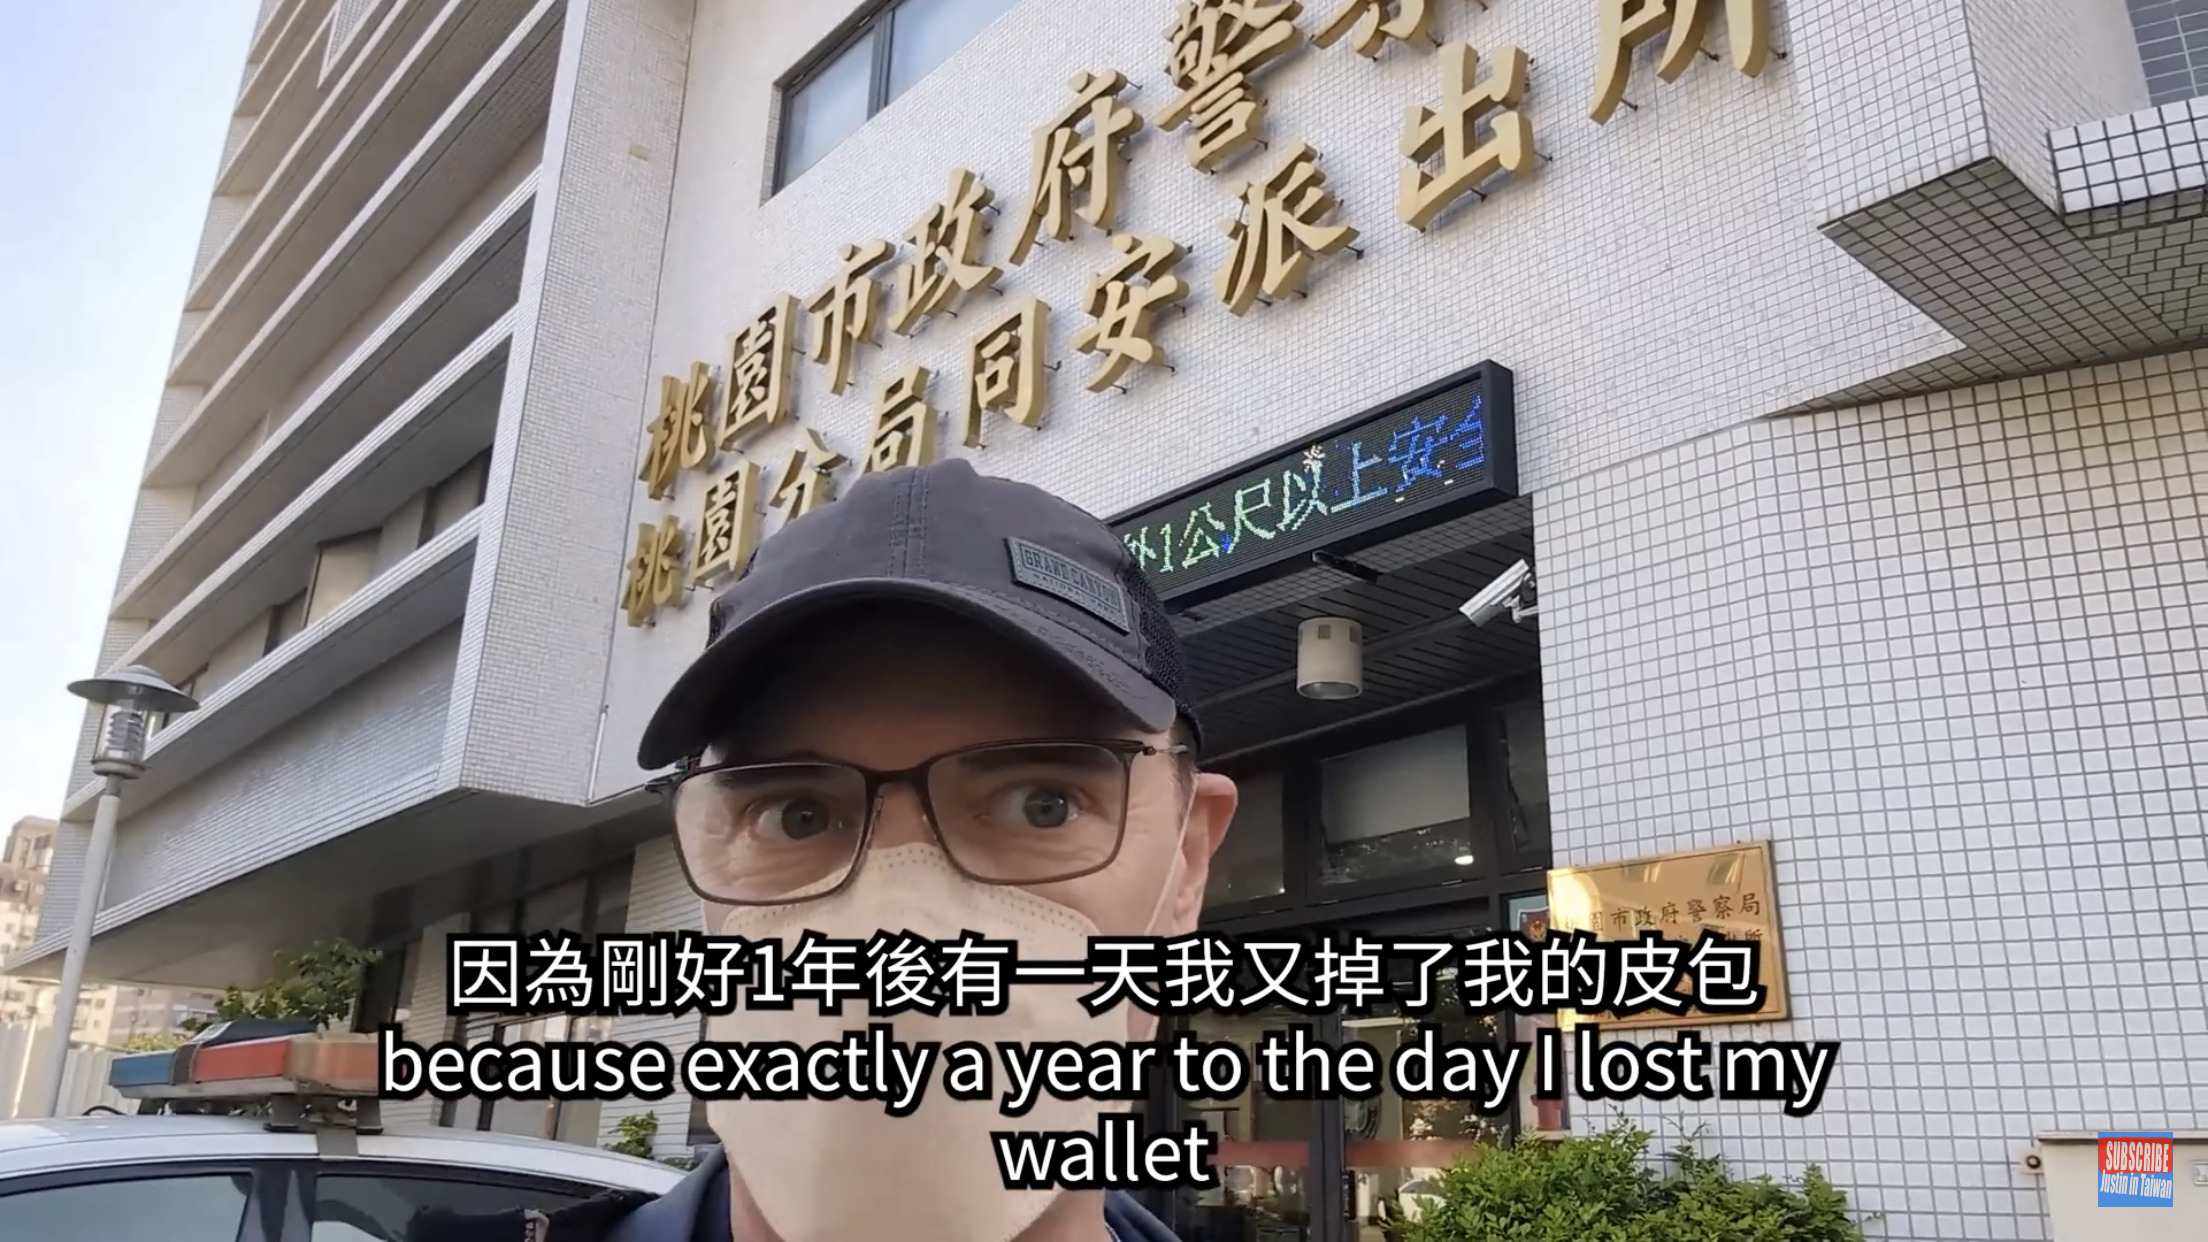 Justin pergi ke kantor polisi untuk mengambil dompet yang hilang.  (Sumber foto : Justin in Taiwan 我不是歪國人)